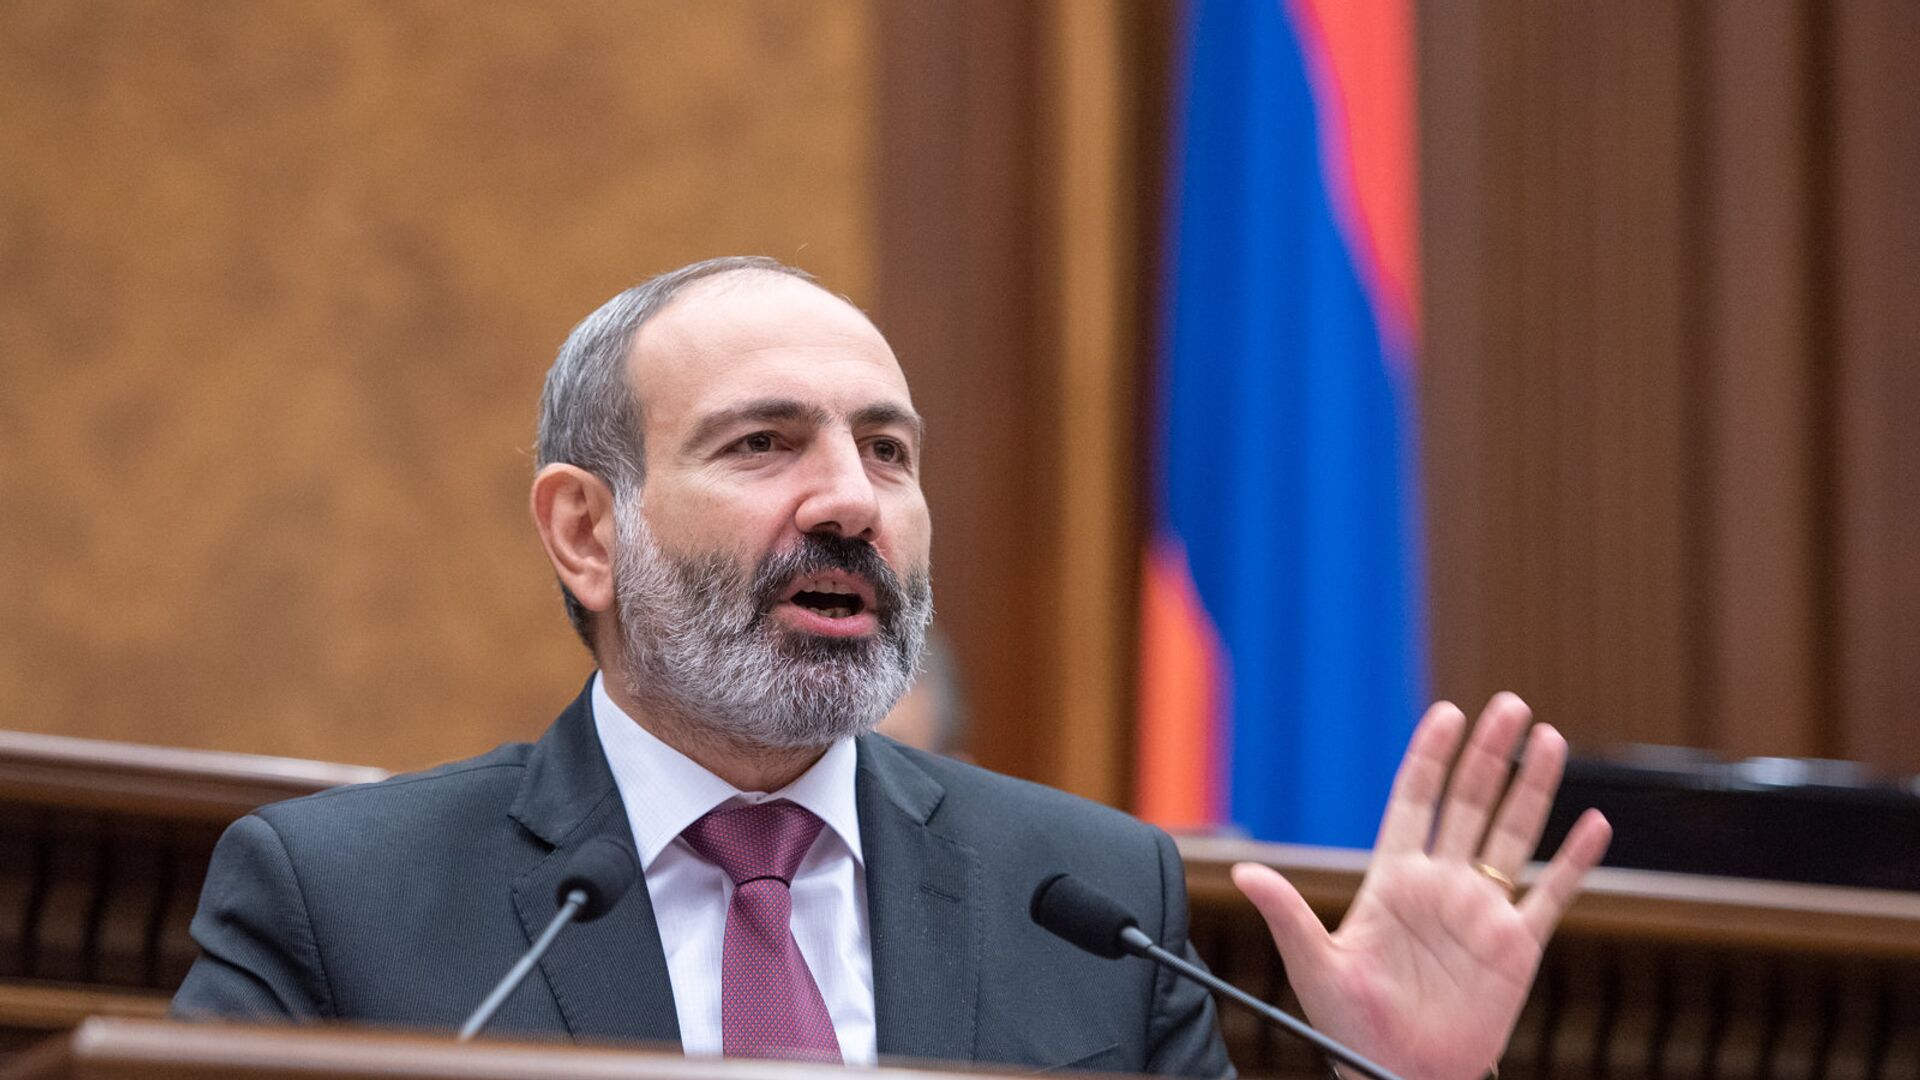 Nikol Pashinián, primer ministro de Armenia - Sputnik Mundo, 1920, 12.08.2021